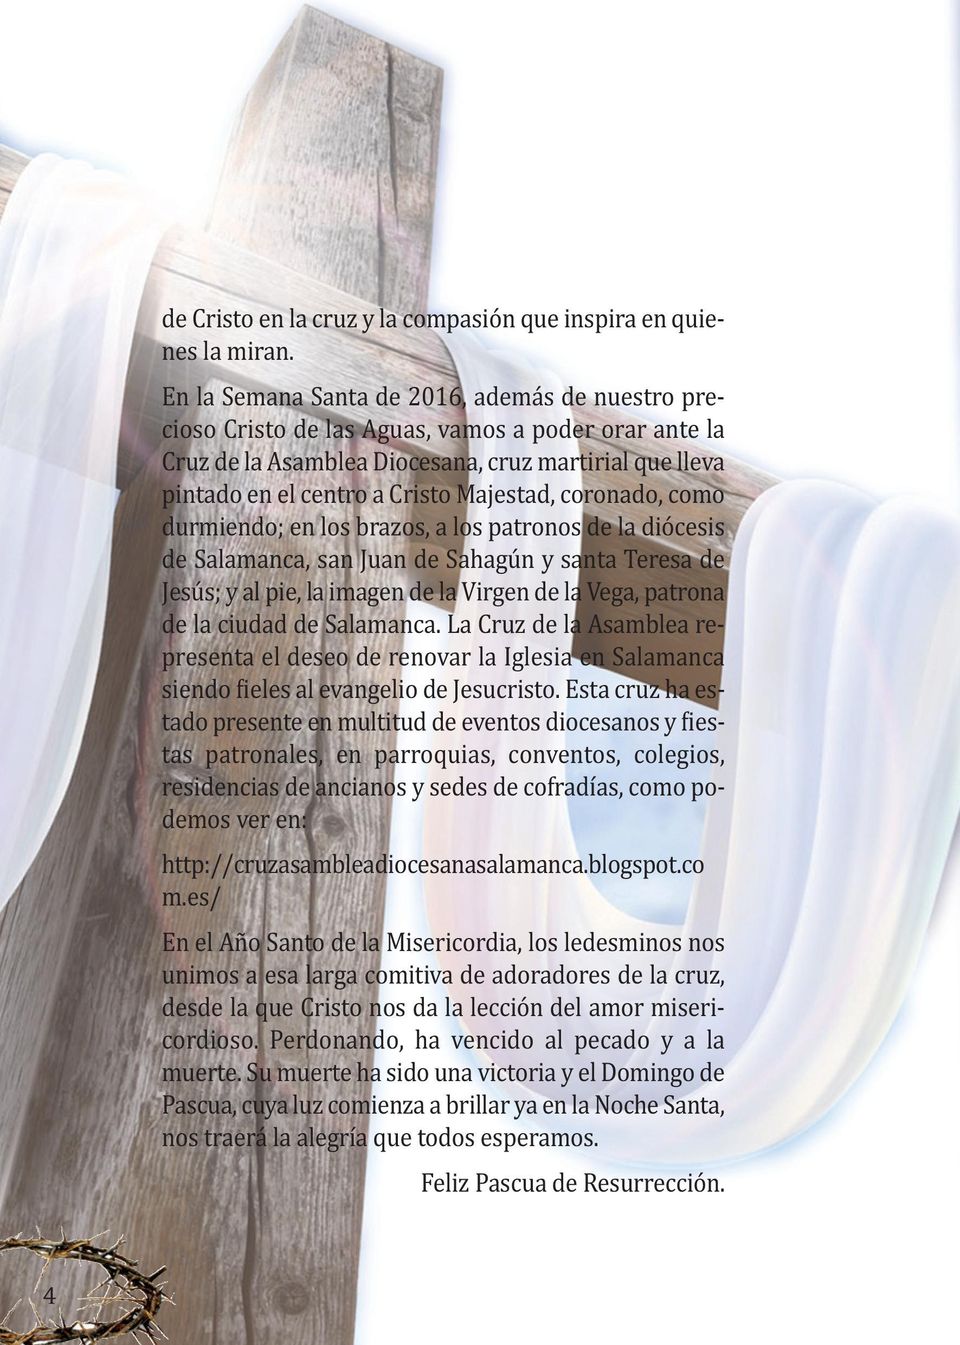 coronado, como durmiendo; en los brazos, a los patronos de la diócesis de Salamanca, san Juan de Sahagún y santa Teresa de Jesús; y al pie, la imagen de la Virgen de la Vega, patrona de la ciudad de